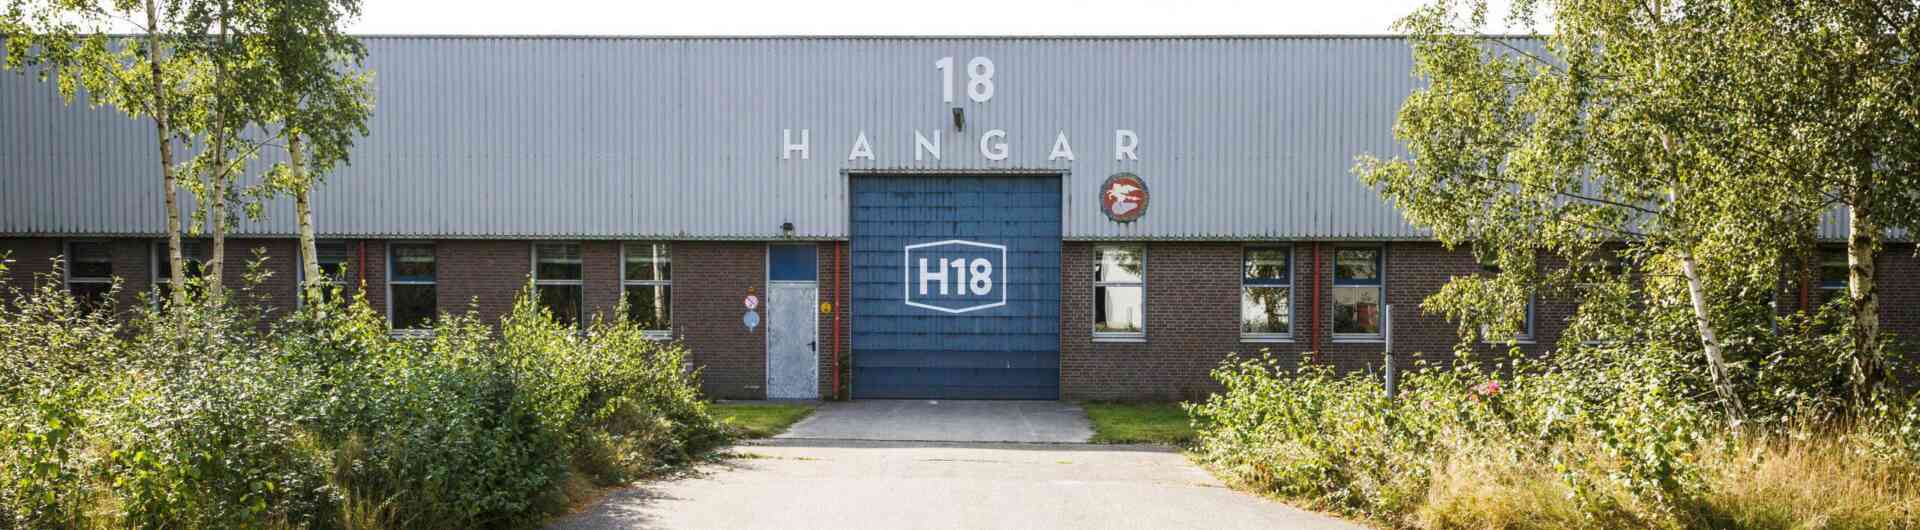 Oostkamp hangar18 buiten 2 scaled